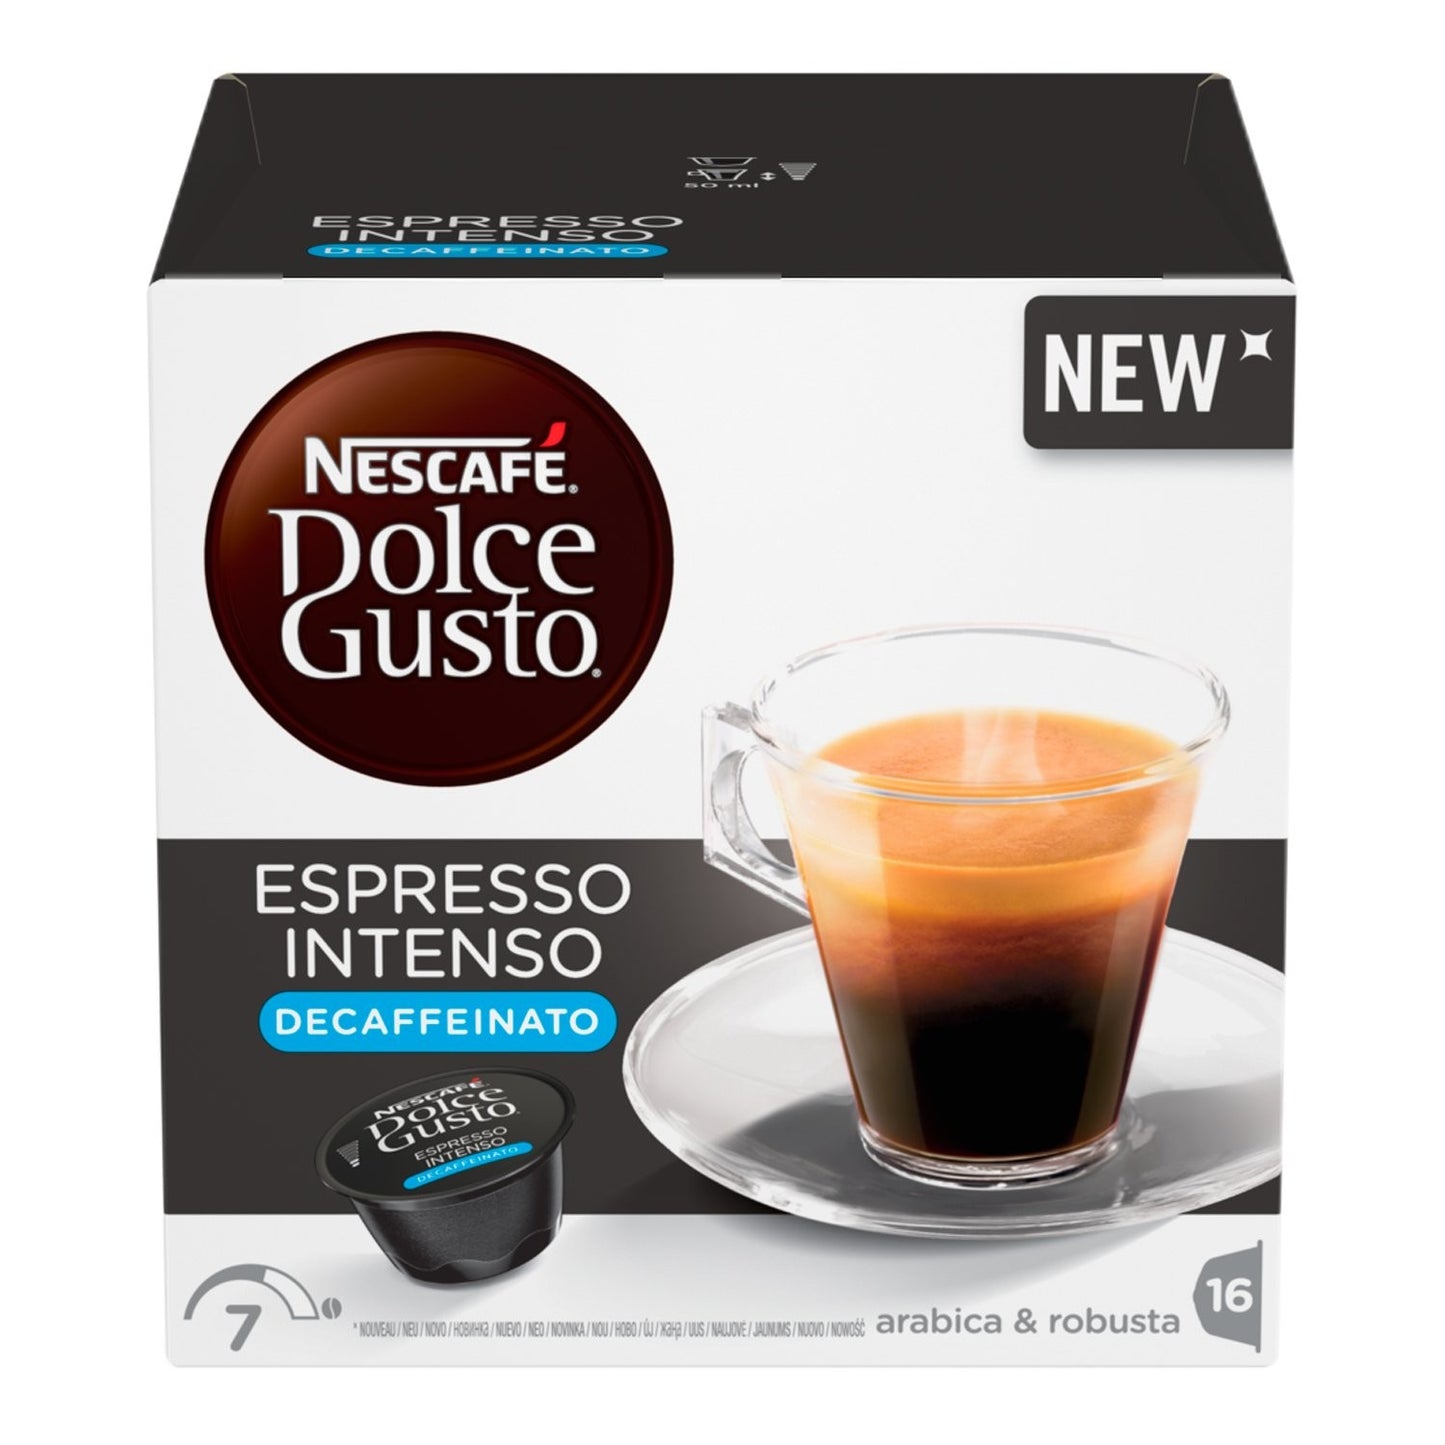 Nescafé Dolce Gusto Intense Espresso Decaffeinated Coffee